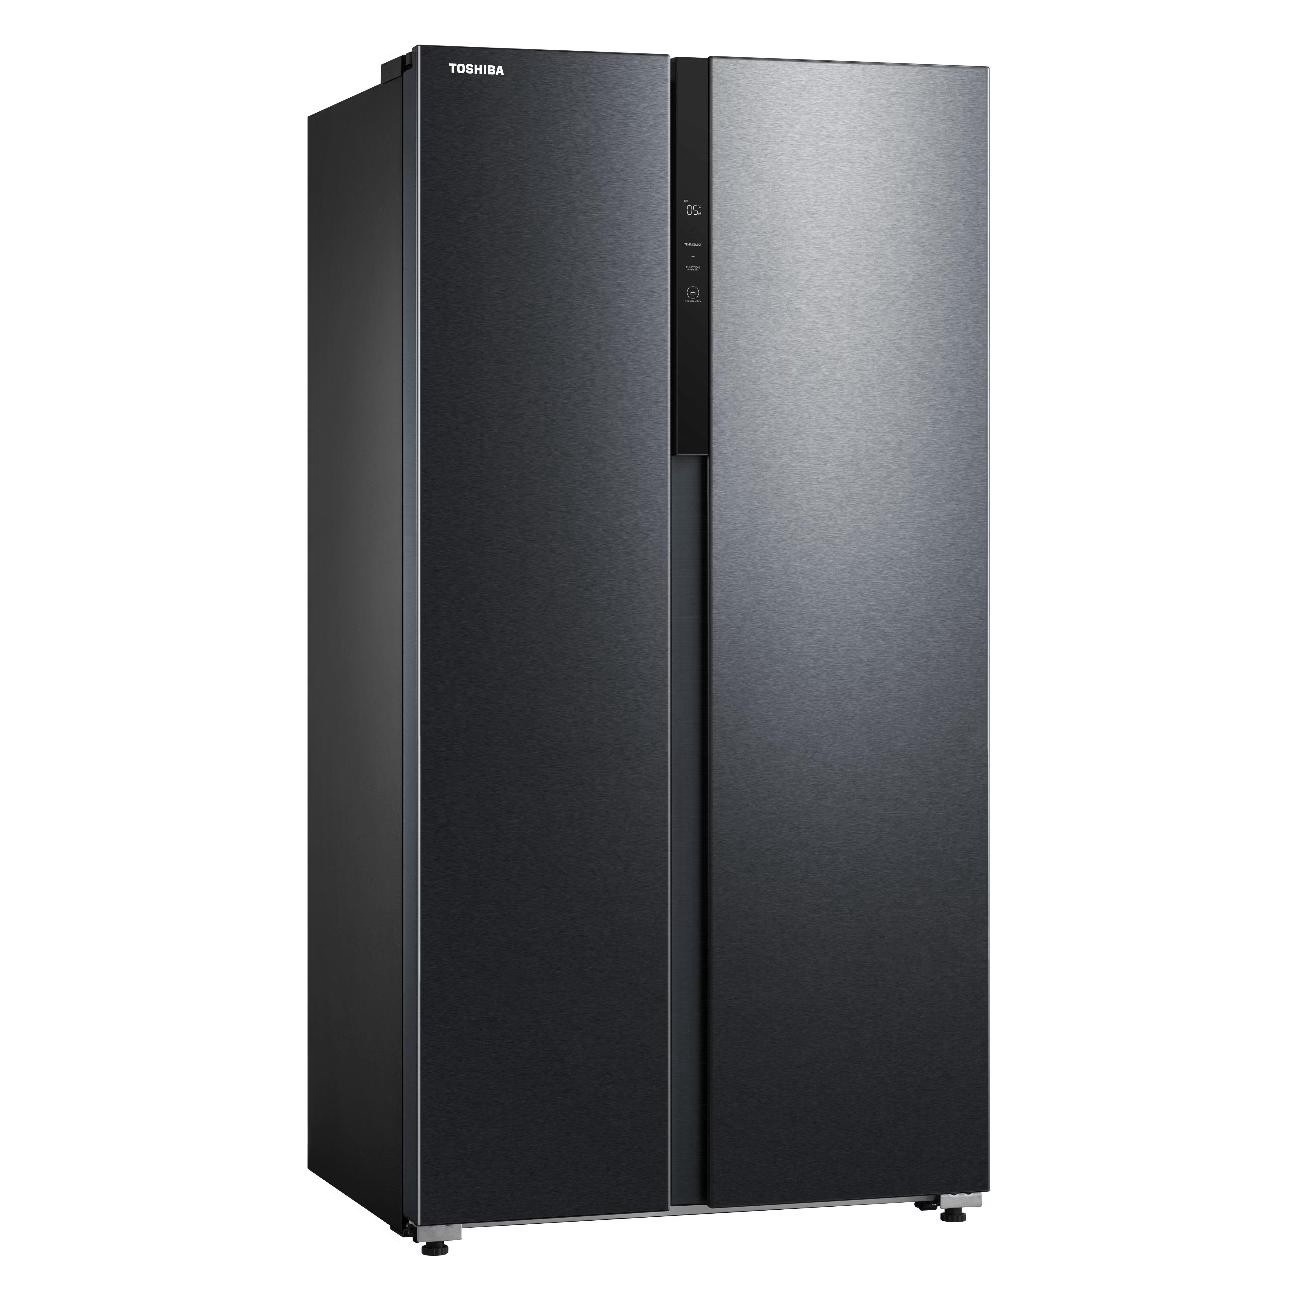 Холодильник Toshiba GR-RS780WI-PMJ(05) черный холодильник toshiba gr rb500we pmj серебристый